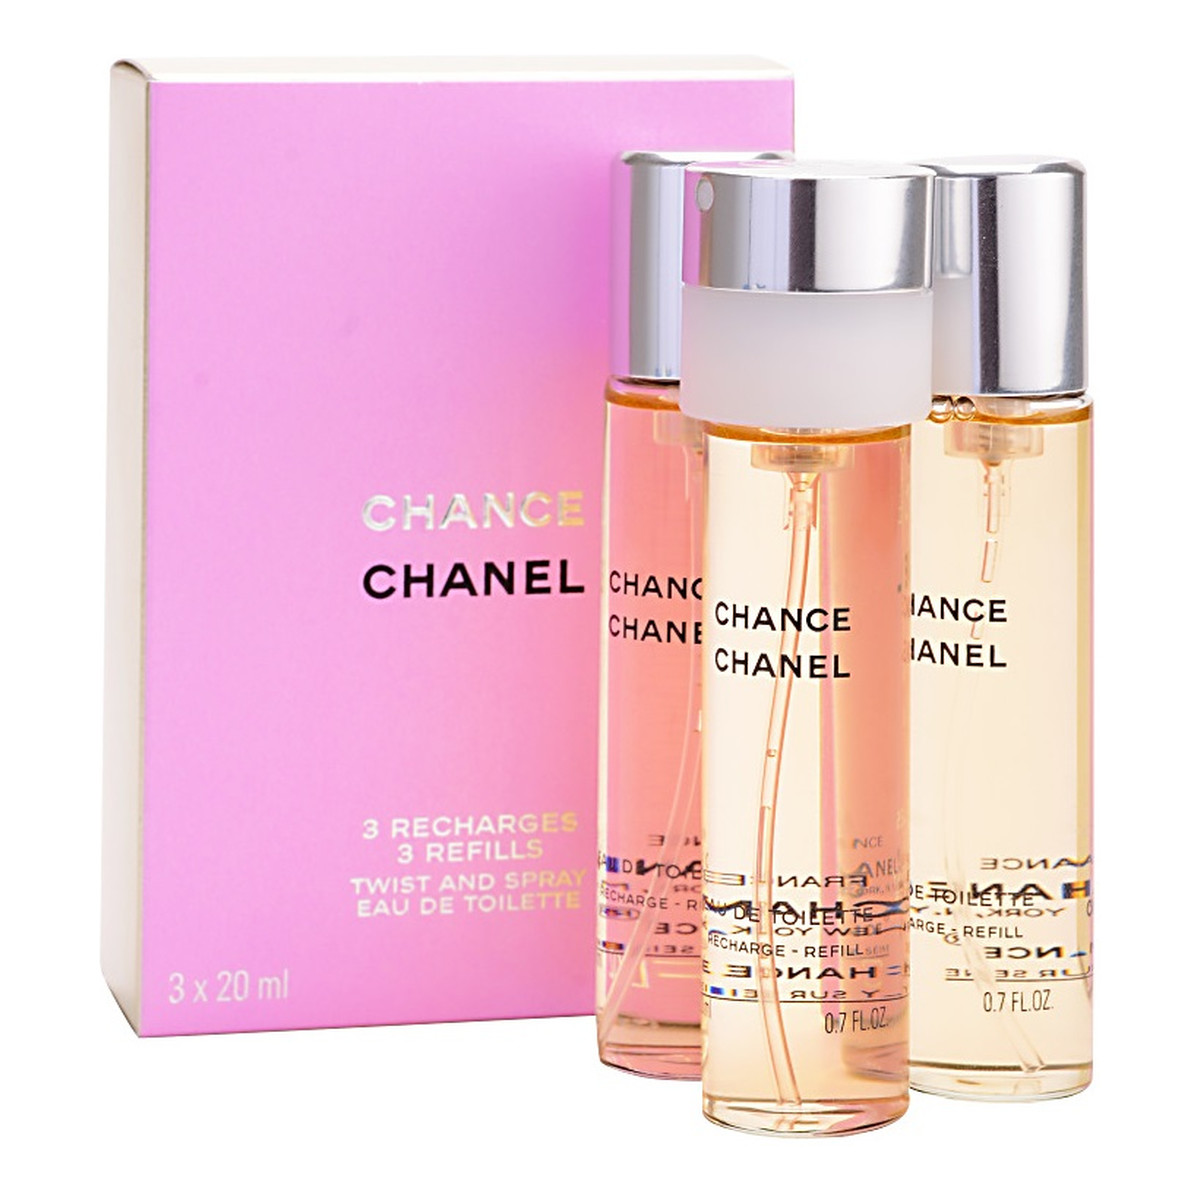 Chanel Chance woda toaletowa dla kobiet 3x20ml 20ml